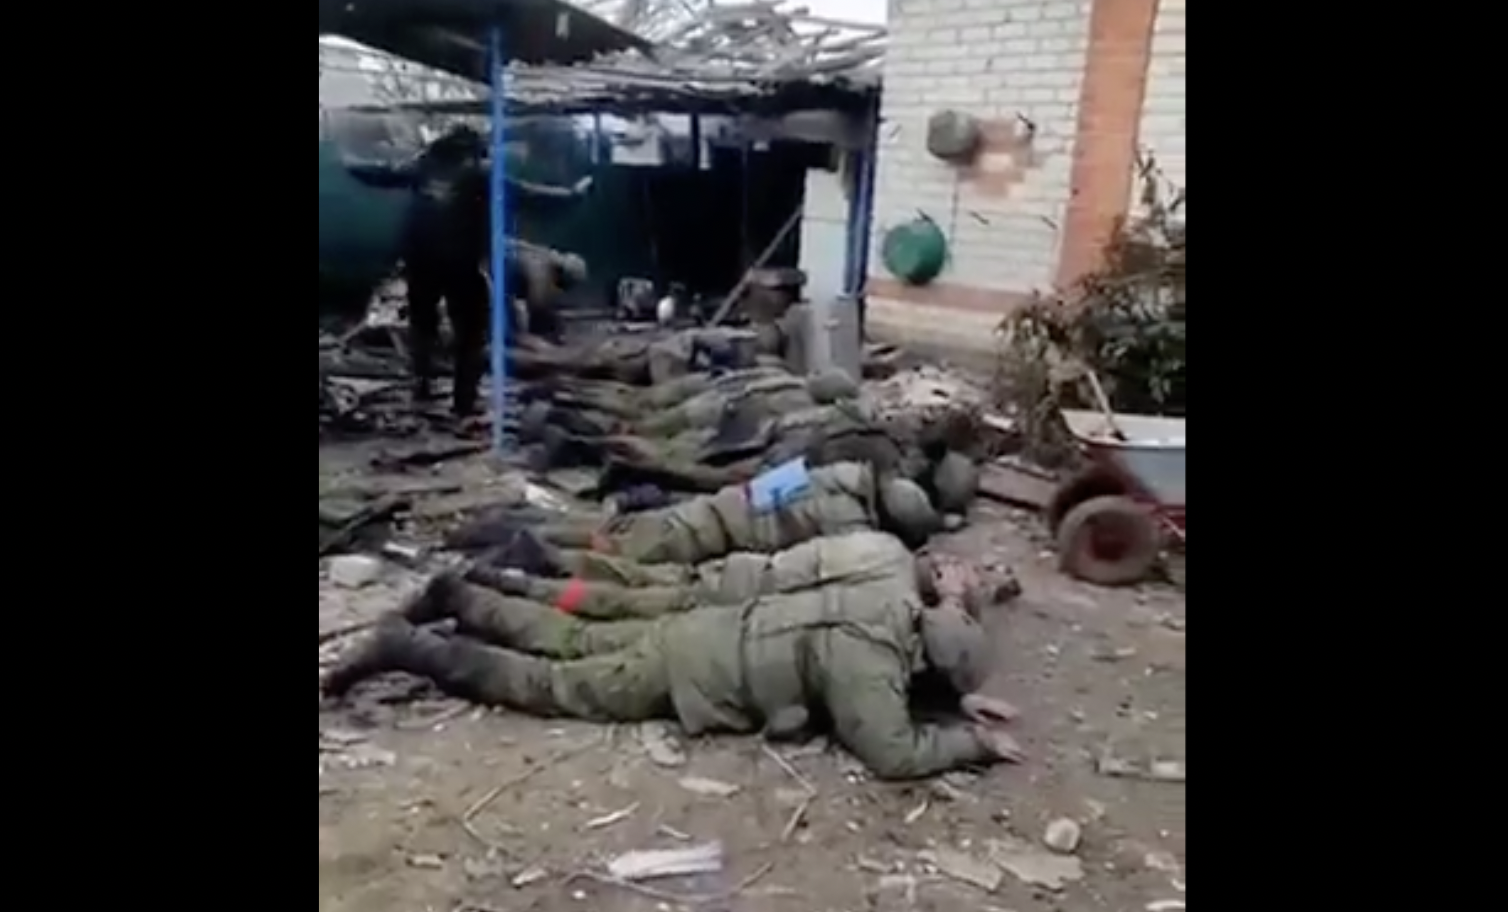 A New York Times szerint hiteles a fogságba került orosz katonák kivégzéséről szóló videó